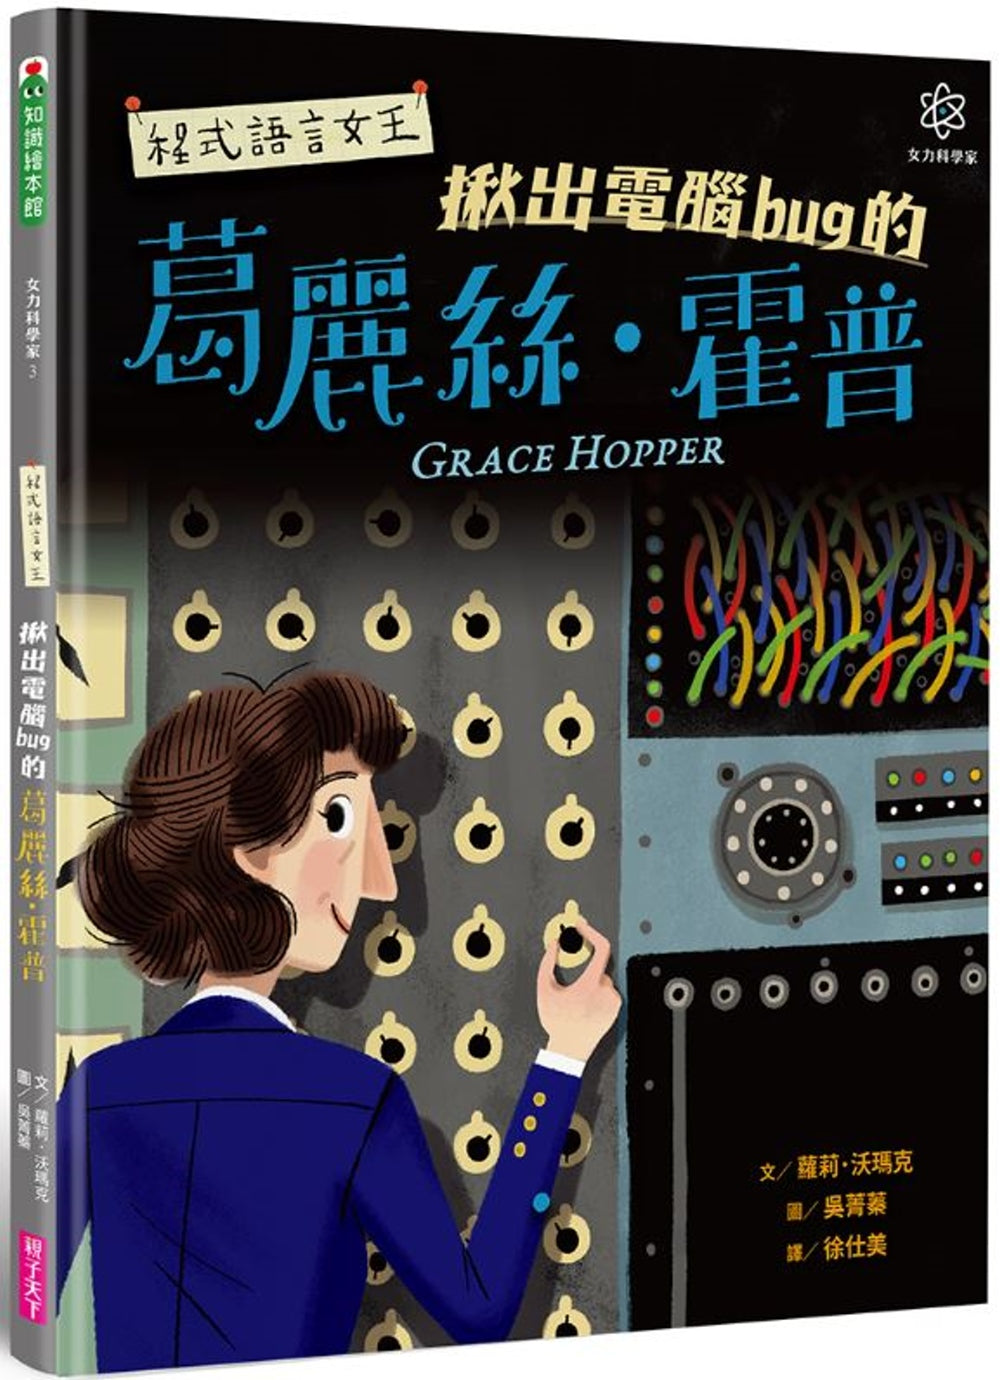 Grace Hopper: Queen of Computer Code • 女力科學家3：程式語言女王 揪出電腦bug的葛麗絲‧霍普